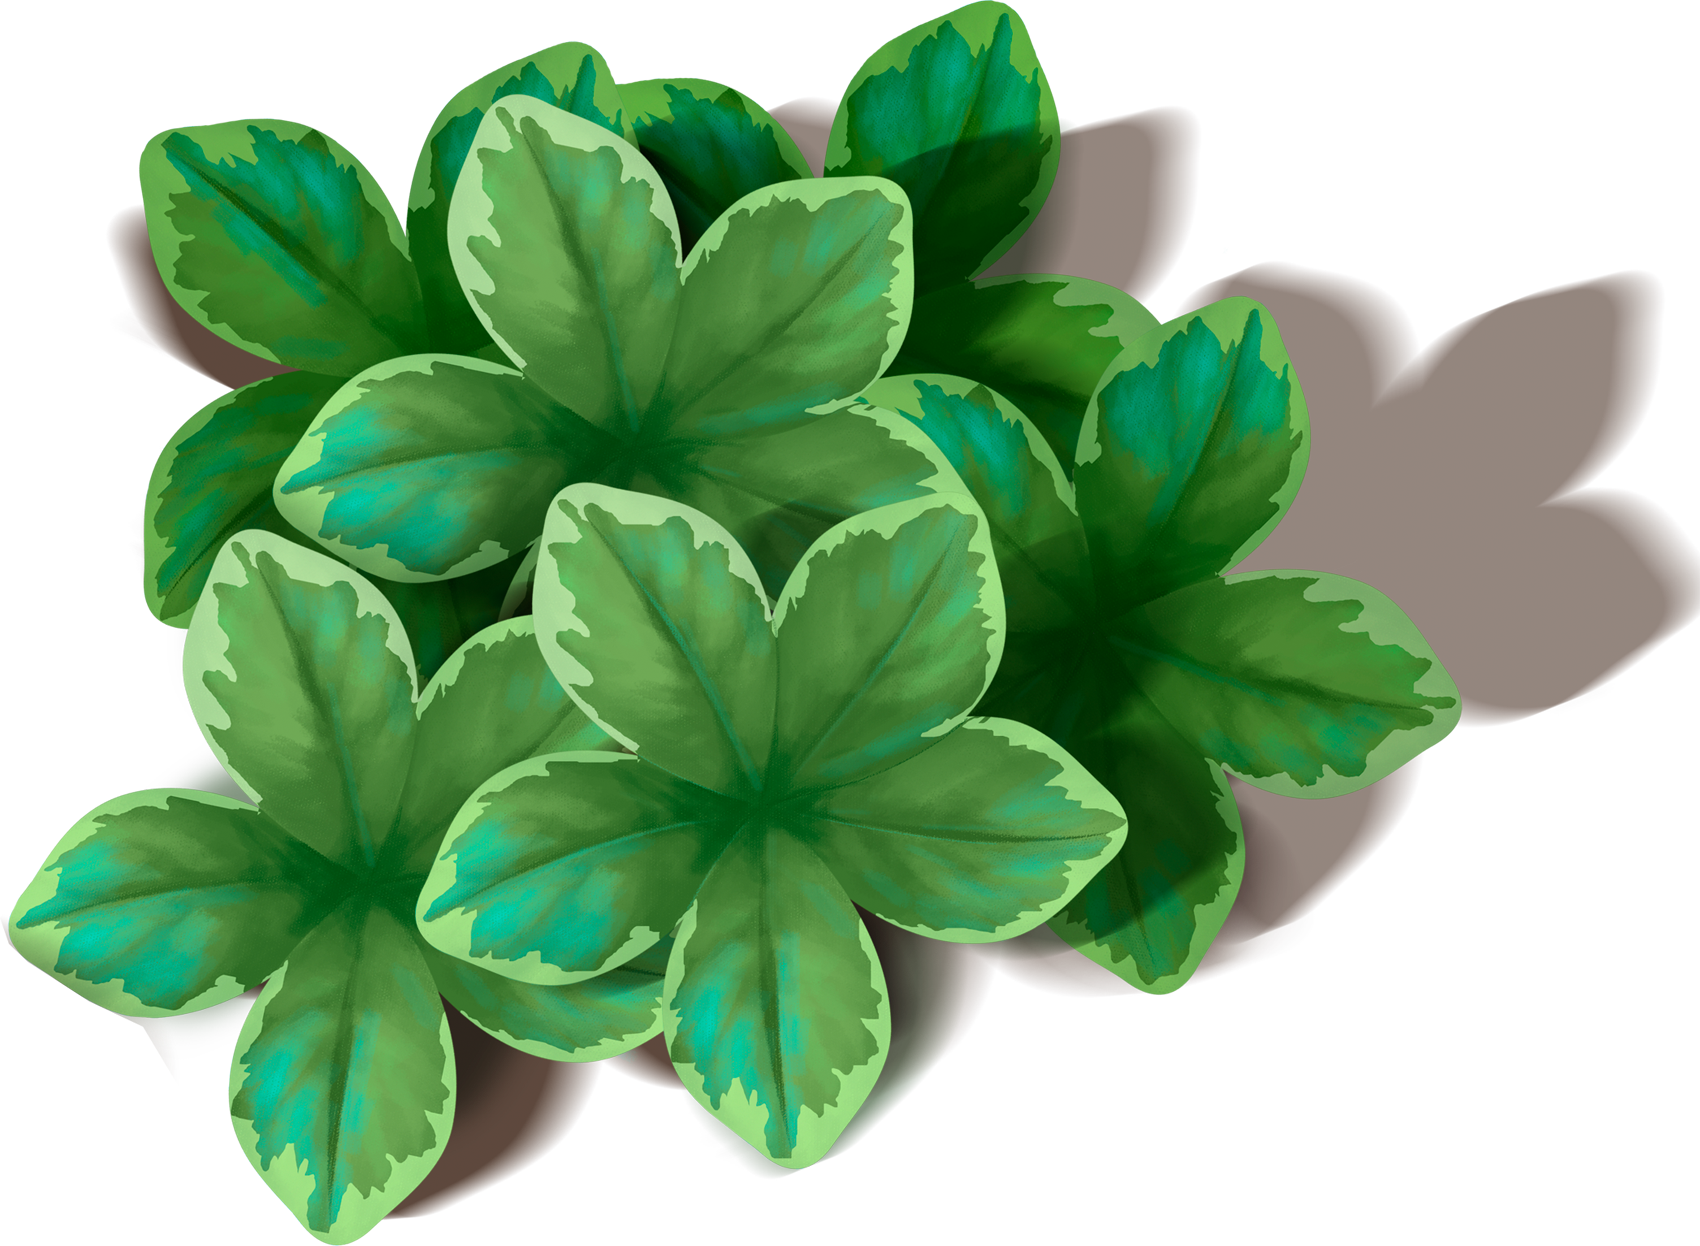 녹색 잎